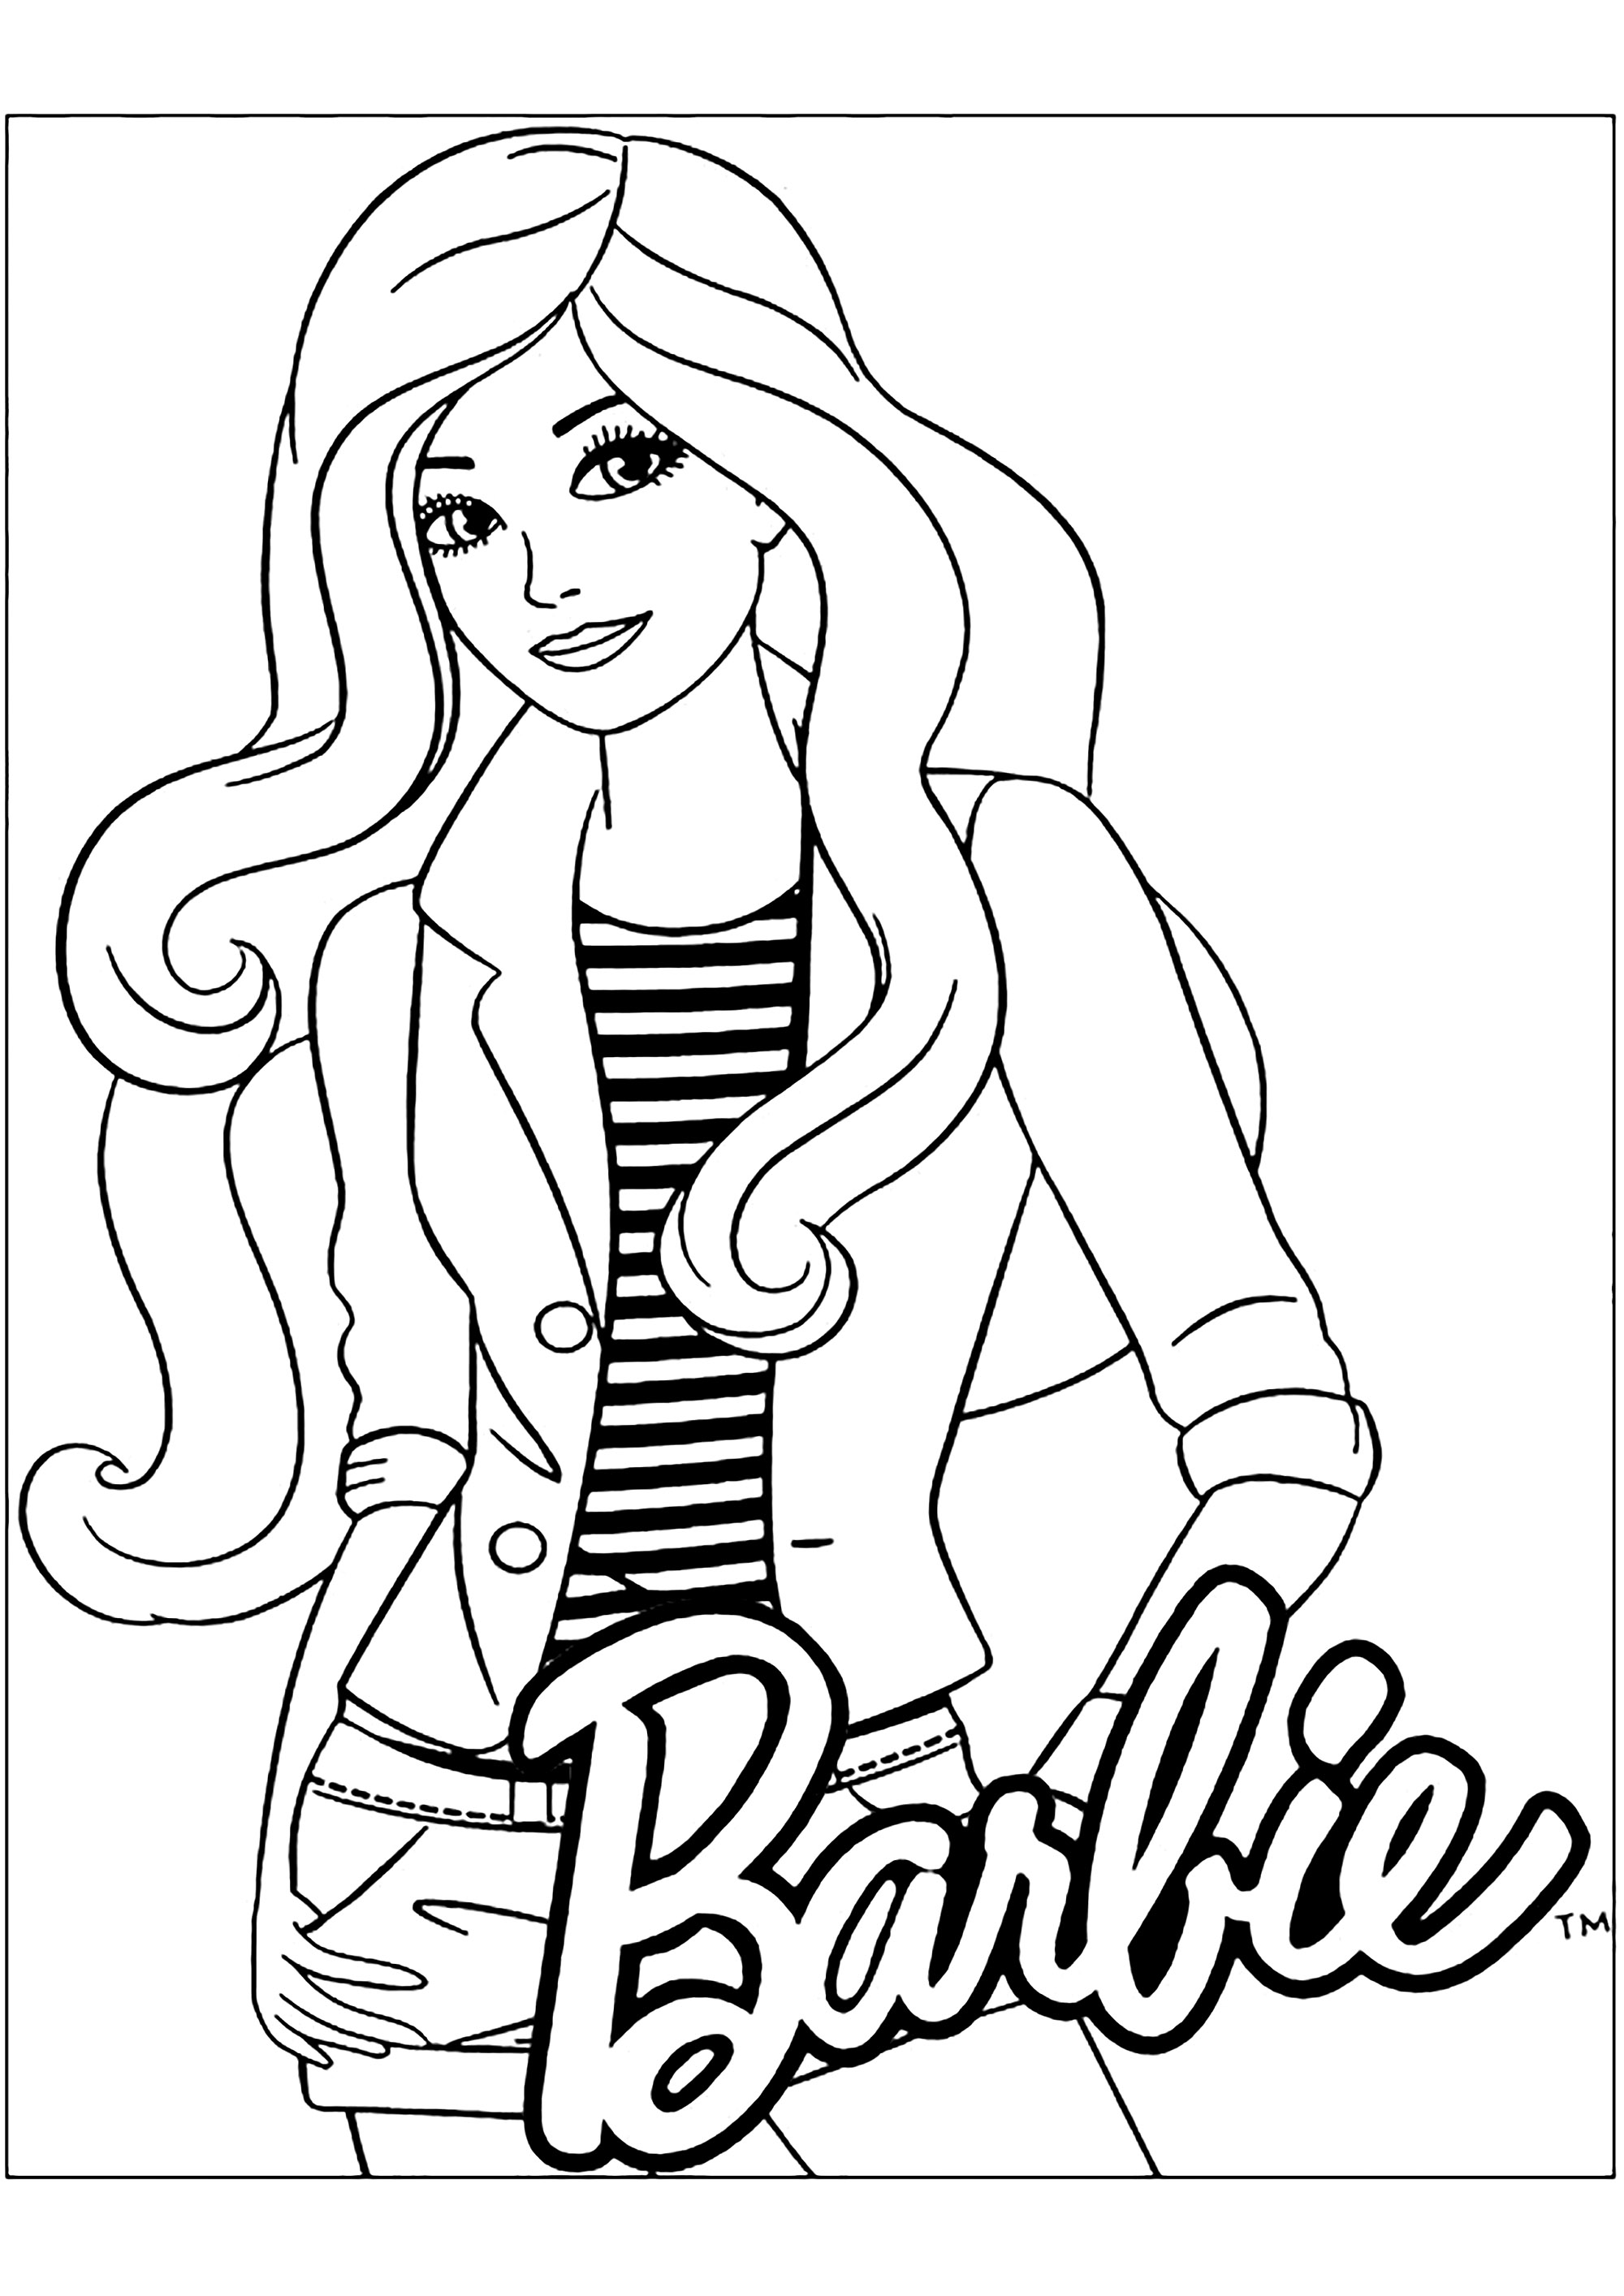 Раскраска барби формат а4. Раскраска девушка. Раскраска. Барби. Раскраска кукла Барби. Картинки раскраски для девочек Барби.